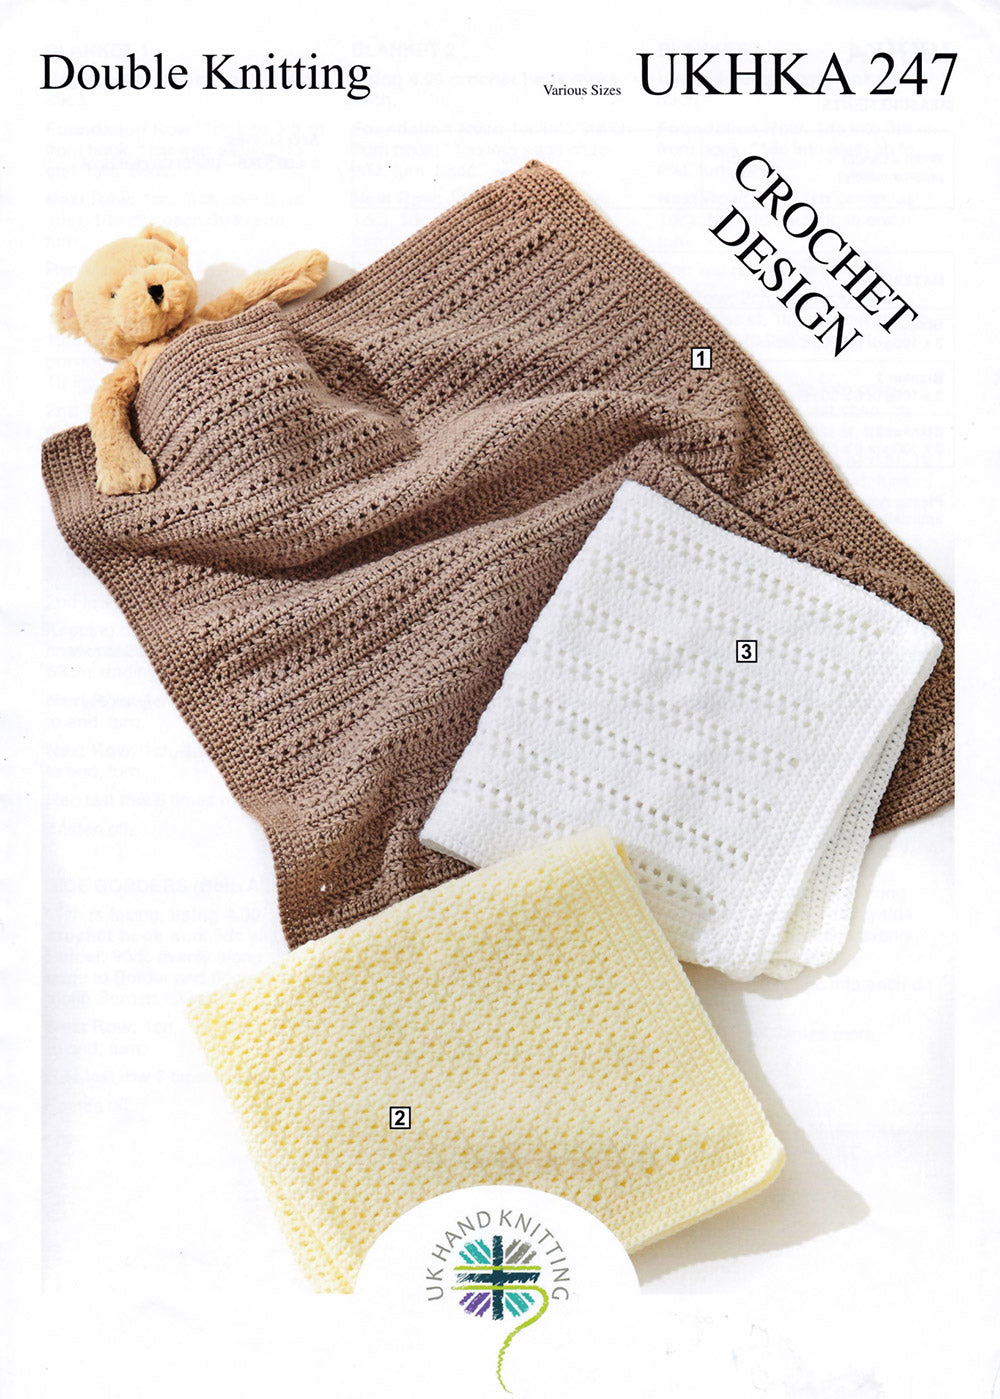 UKHKA 247: Crochet Blankets